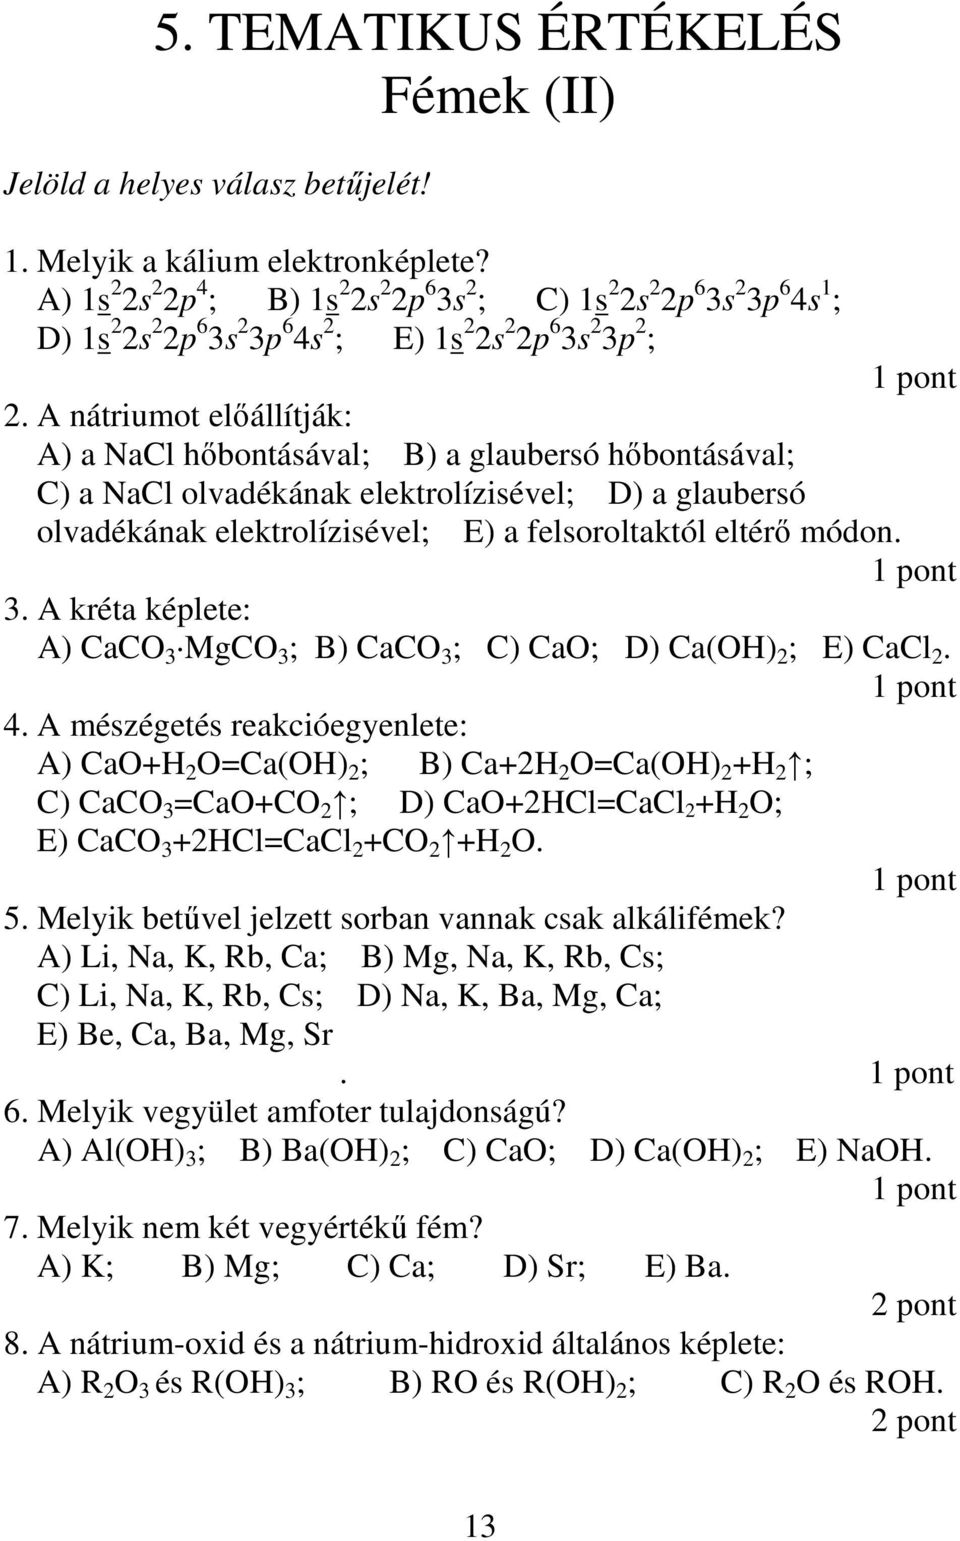 A nátriumot elıállítják: A) a NaCl hıbontásával; B) a glaubersó hıbontásával; C) a NaCl olvadékának elektrolízisével; D) a glaubersó olvadékának elektrolízisével; E) a felsoroltaktól eltérı módon. 3.